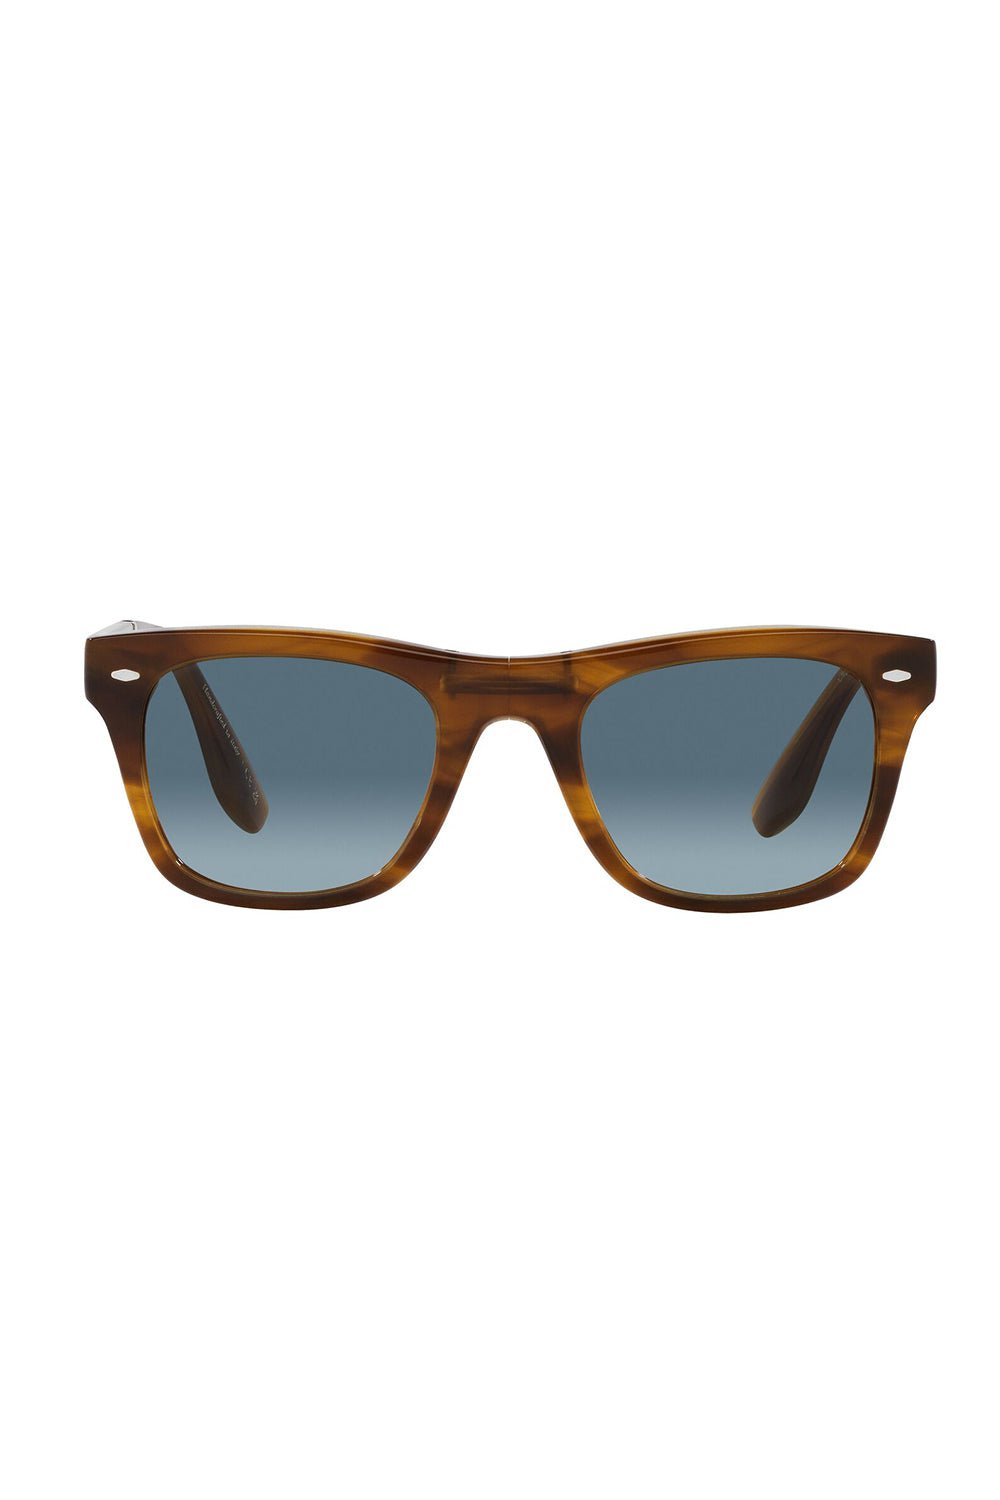 OLIVER PEOPLES-Mister Brunello Folding Sunglasses - Raintree Marine-RAINTREE/MARINE GRADIENT